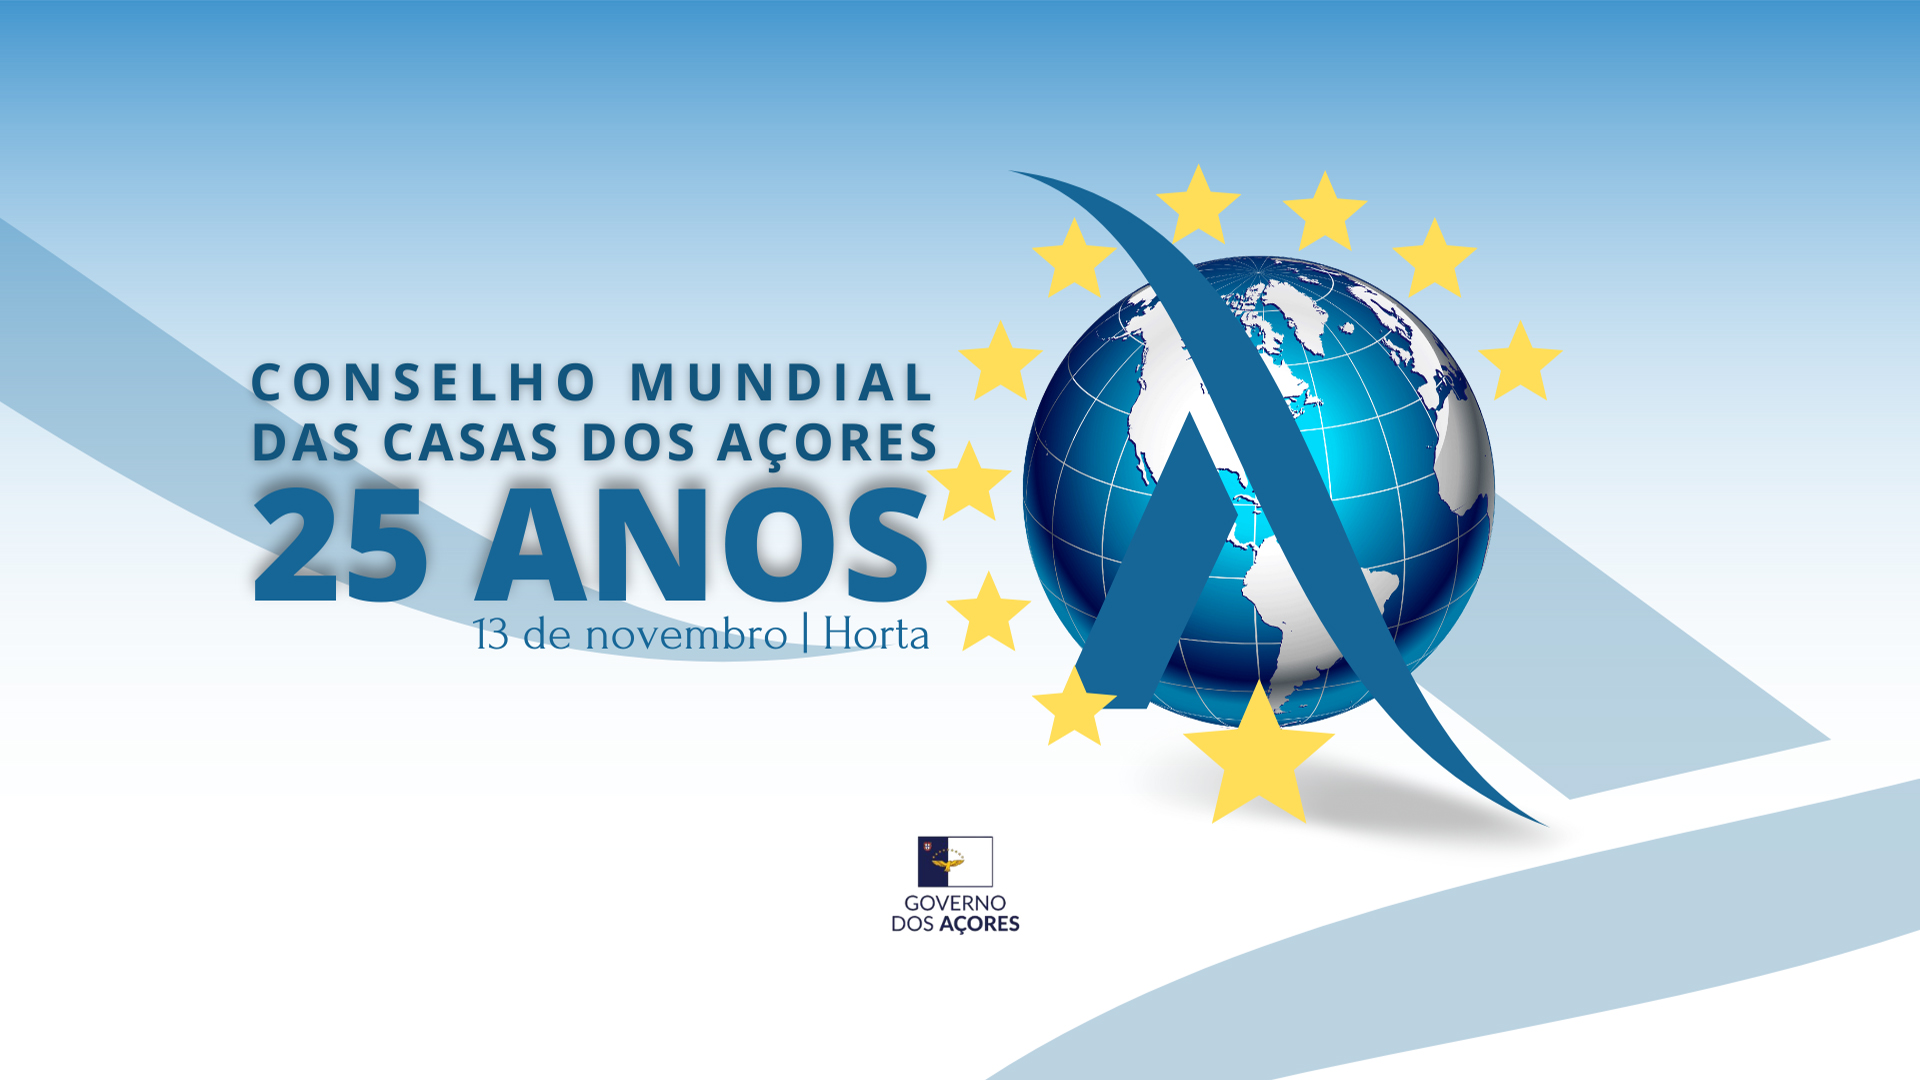 Conselho Mundial das Casas dos Açores comemora 25 anos no domingo